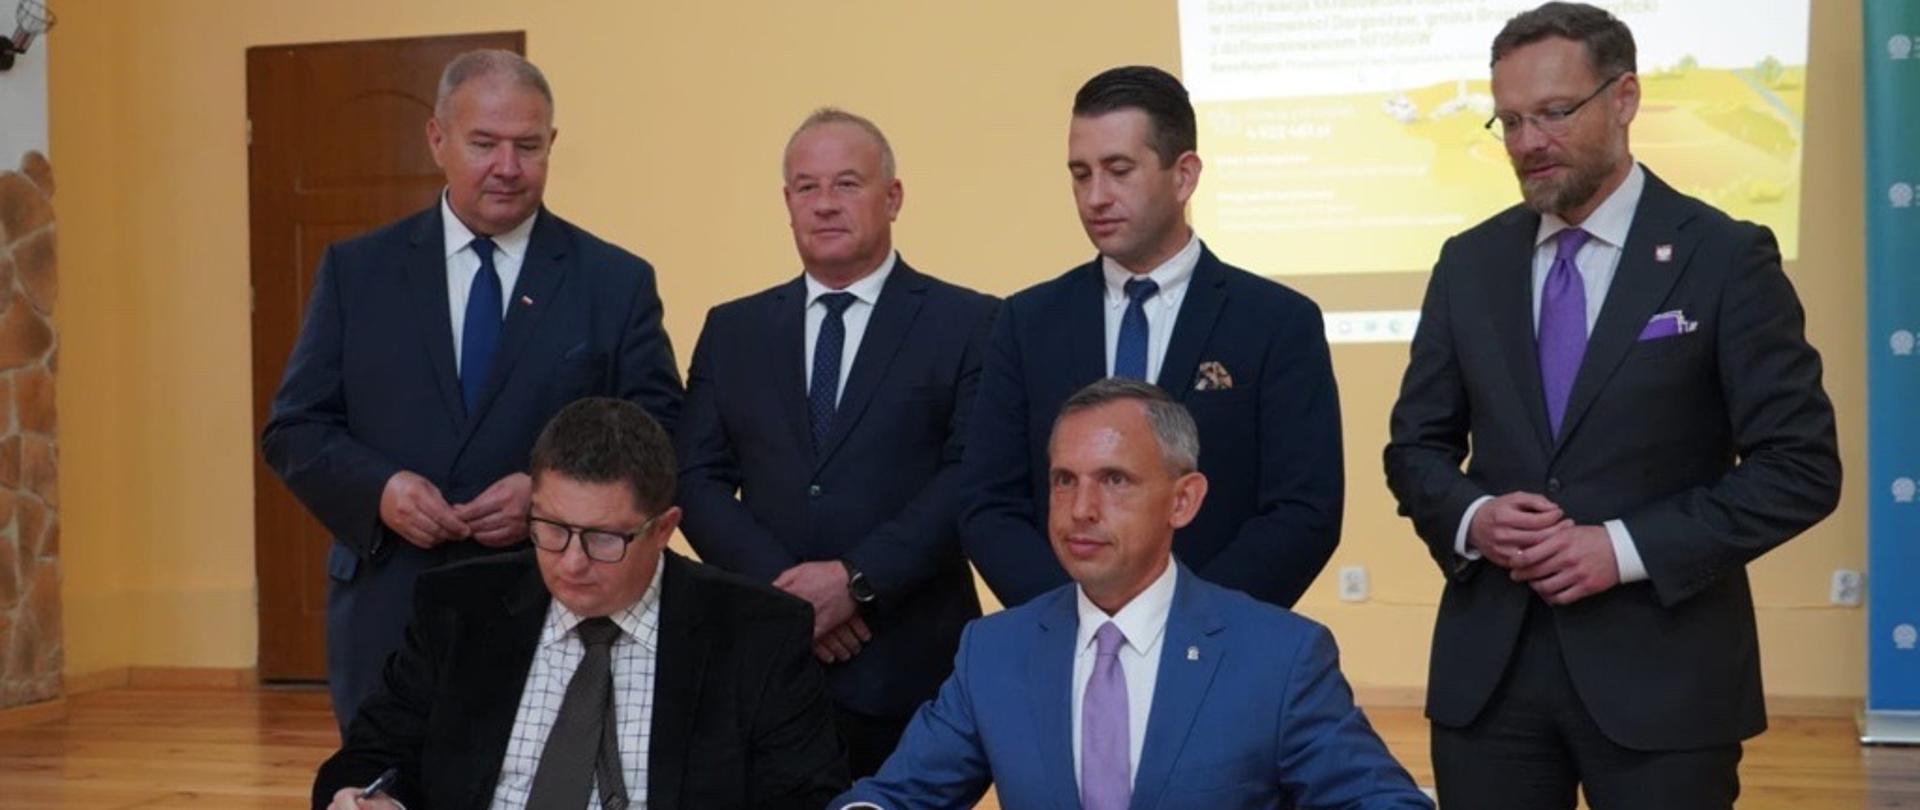 Paweł Mirowski, zastępca prezesa zarządu NFOŚiGW podpisuje umowę z beneficjentami. Zdjęcie grupowe